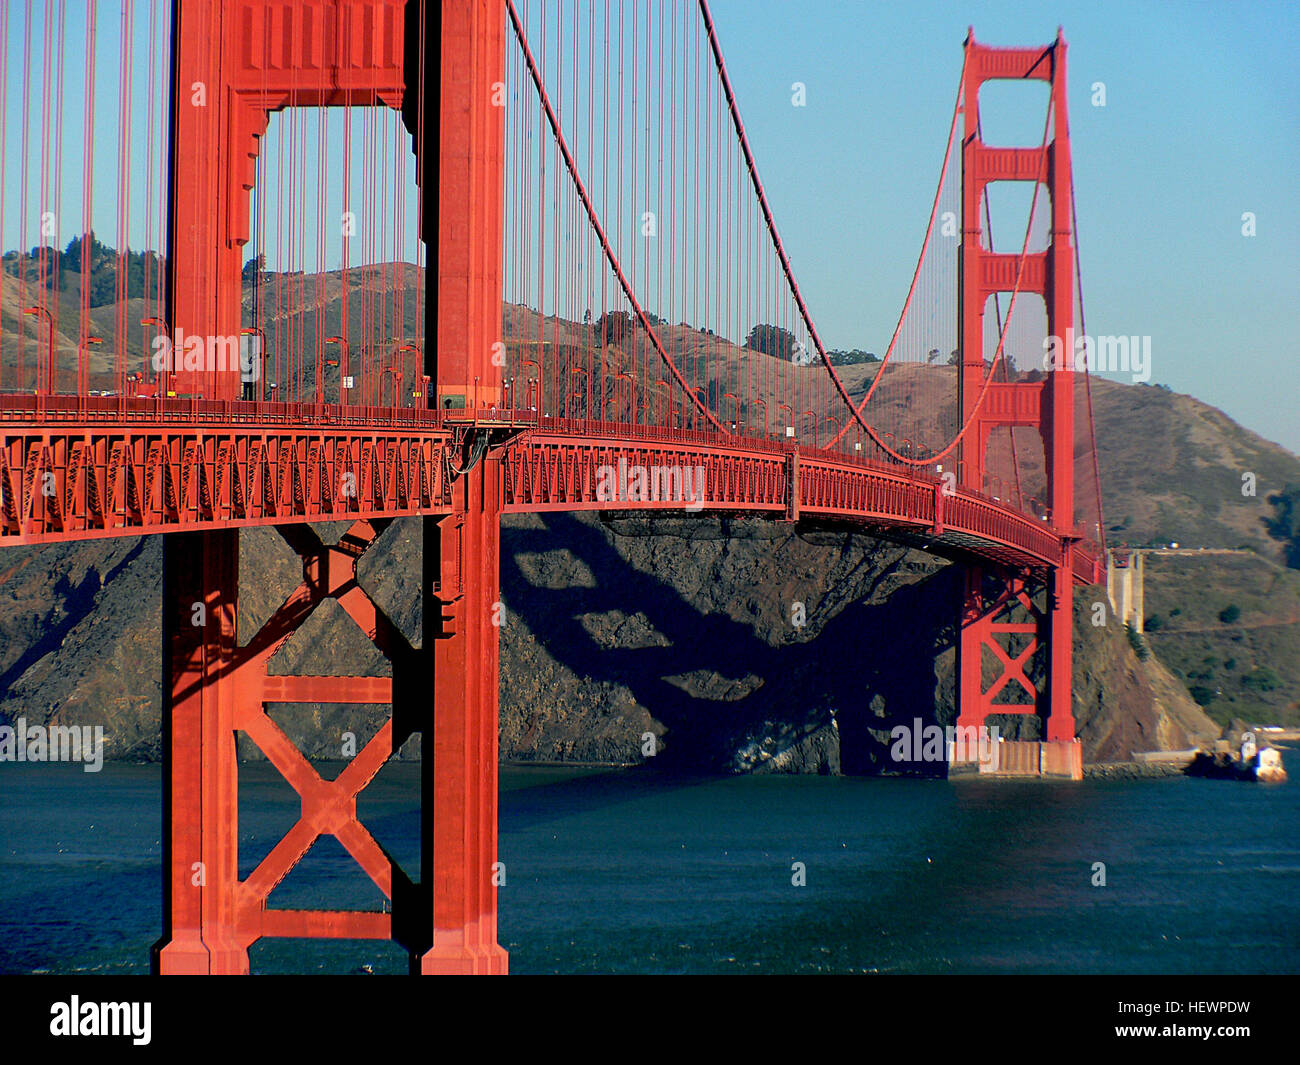 Die Farbe genannt "International Orange" existierte vor der Brücke (und noch vorhanden ist) und wird eine Farbe verwendet, in der Luft-und Raumfahrtindustrie Dinge von ihrer Umgebung abheben Sicherheitsorange ähnlich, aber tiefer und mit einem rötlicher Ton. Sie können hierzu die "anderen" International Orange Farbe hier sehen: en.wikipedia.org/wiki/International orange (http://en.wikipedia.org/wiki/International orange) die Golden Gate Bridge ist gemalt Golden Gate Bridge International Orange die von Consulting Architekten Irving F. Morrow ausgewählt wurde. Stockfoto